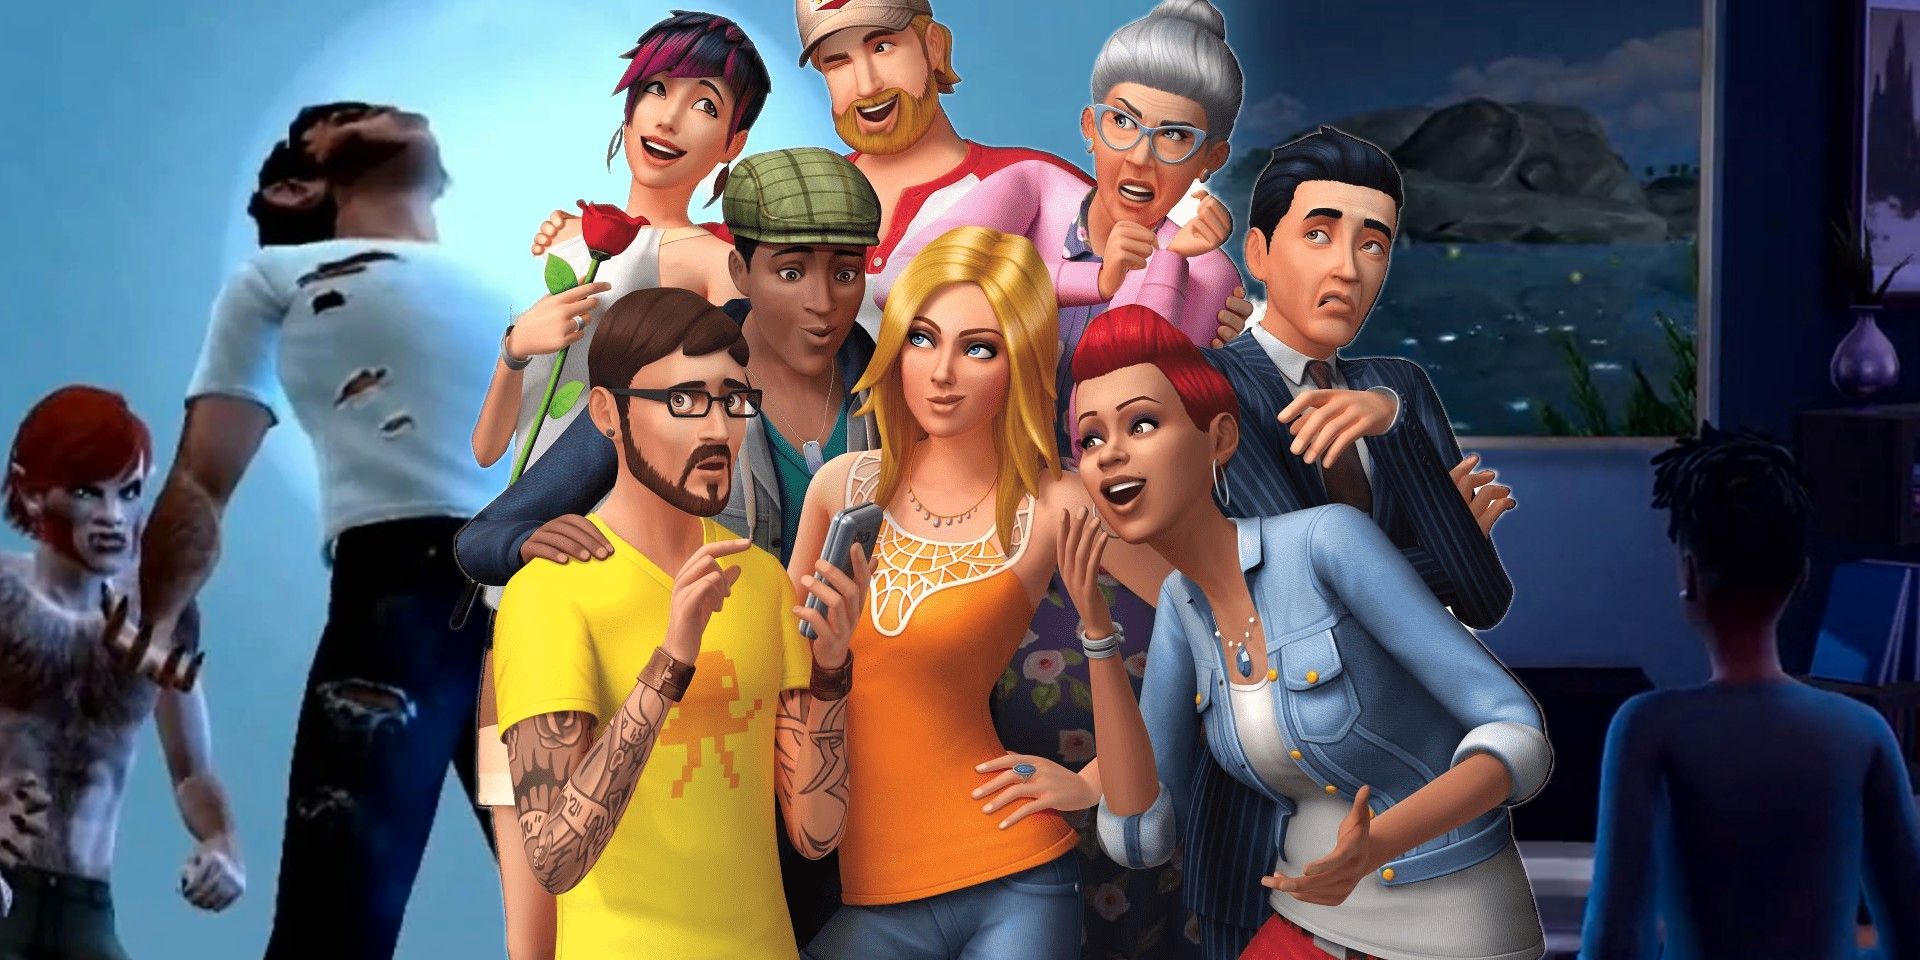 Sims 4 se burla de los hombres lobo, confirma un nuevo paquete de juego y 2 kits